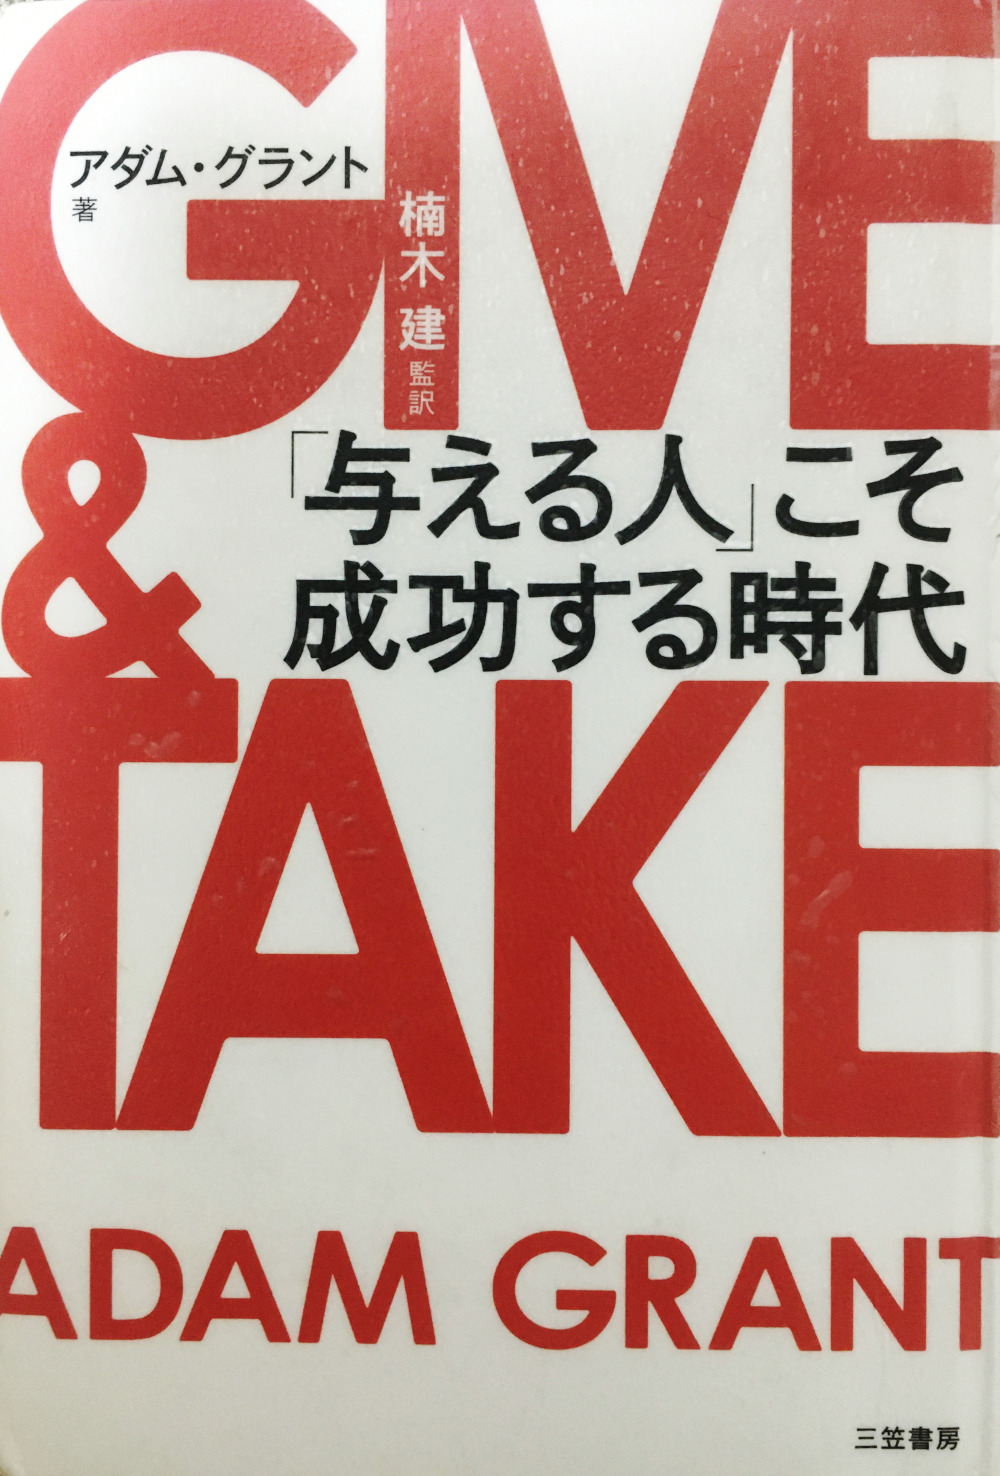 GIVE & TAKE「与える人」こそ成功する時代